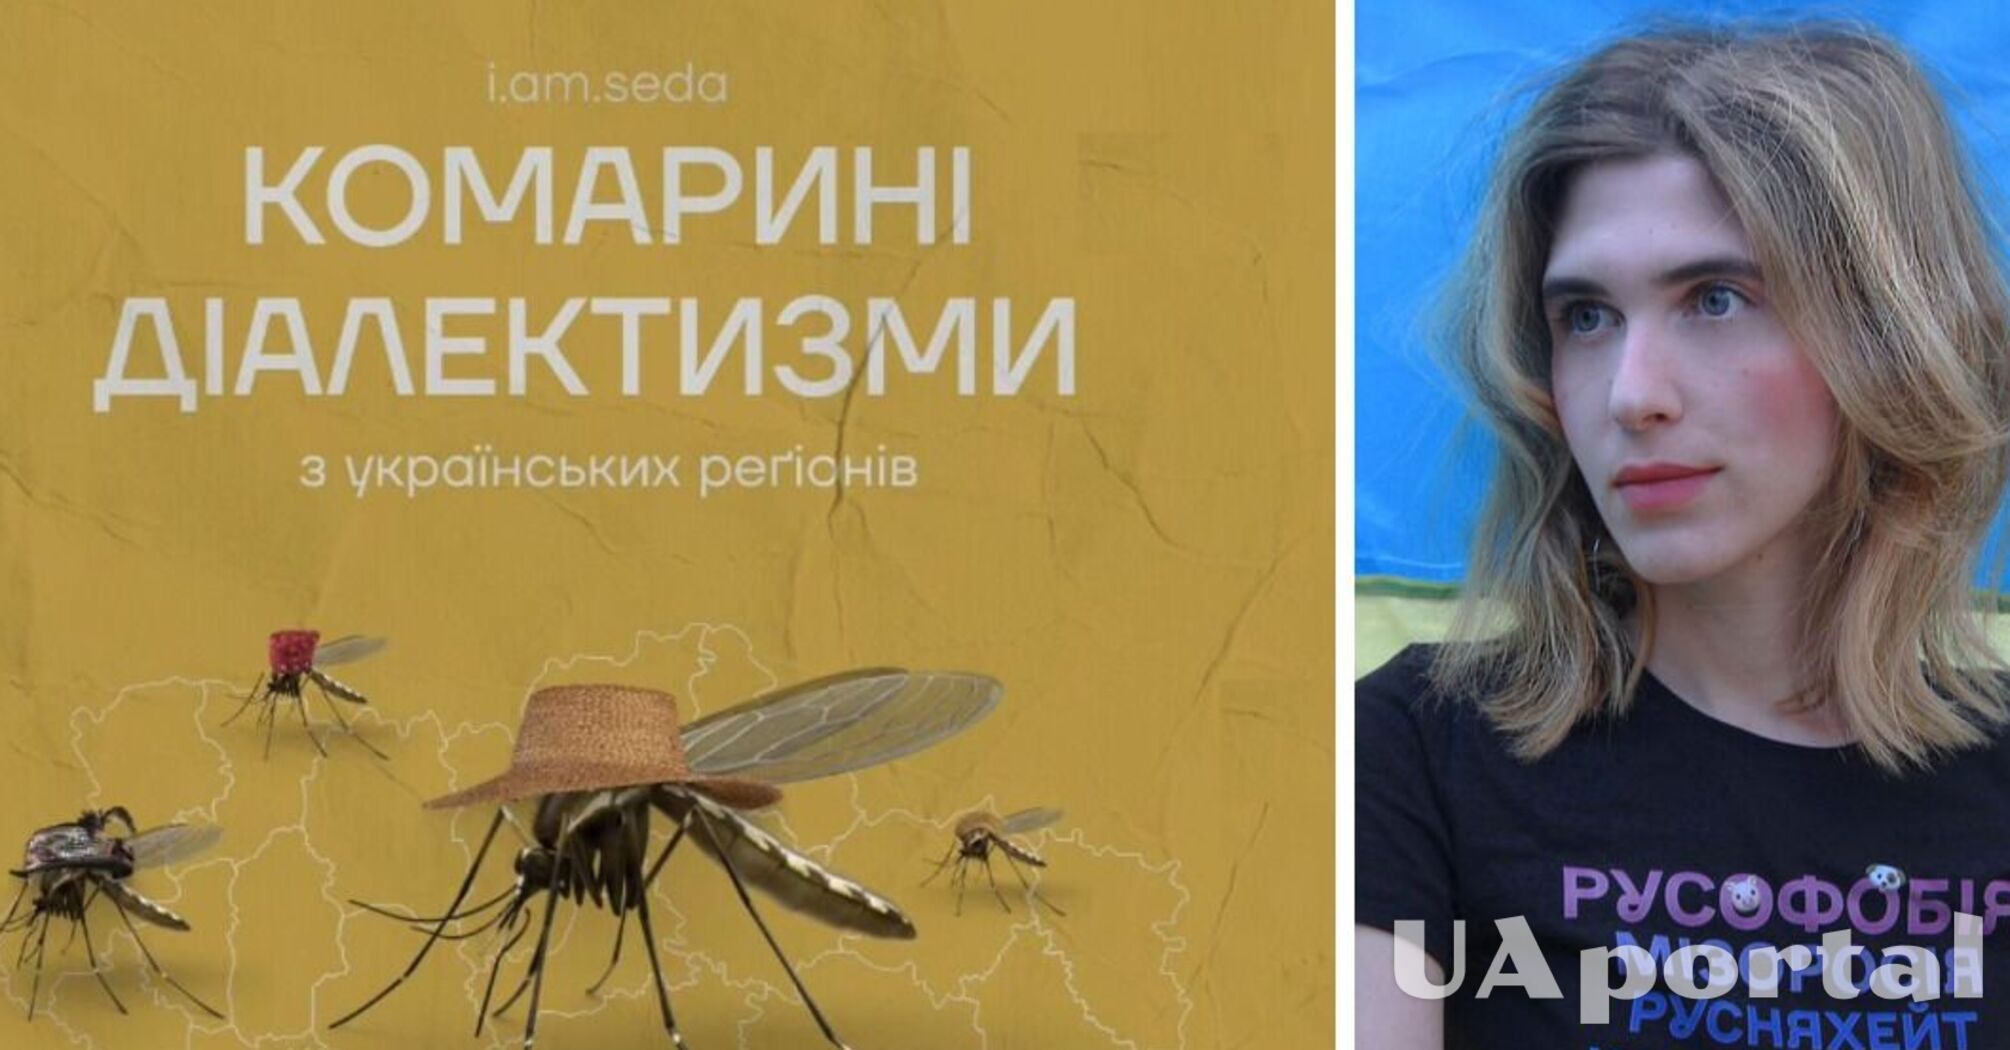 Цинцар, овадня та лярва: що спільного в українських 'комариних діалектизмах'